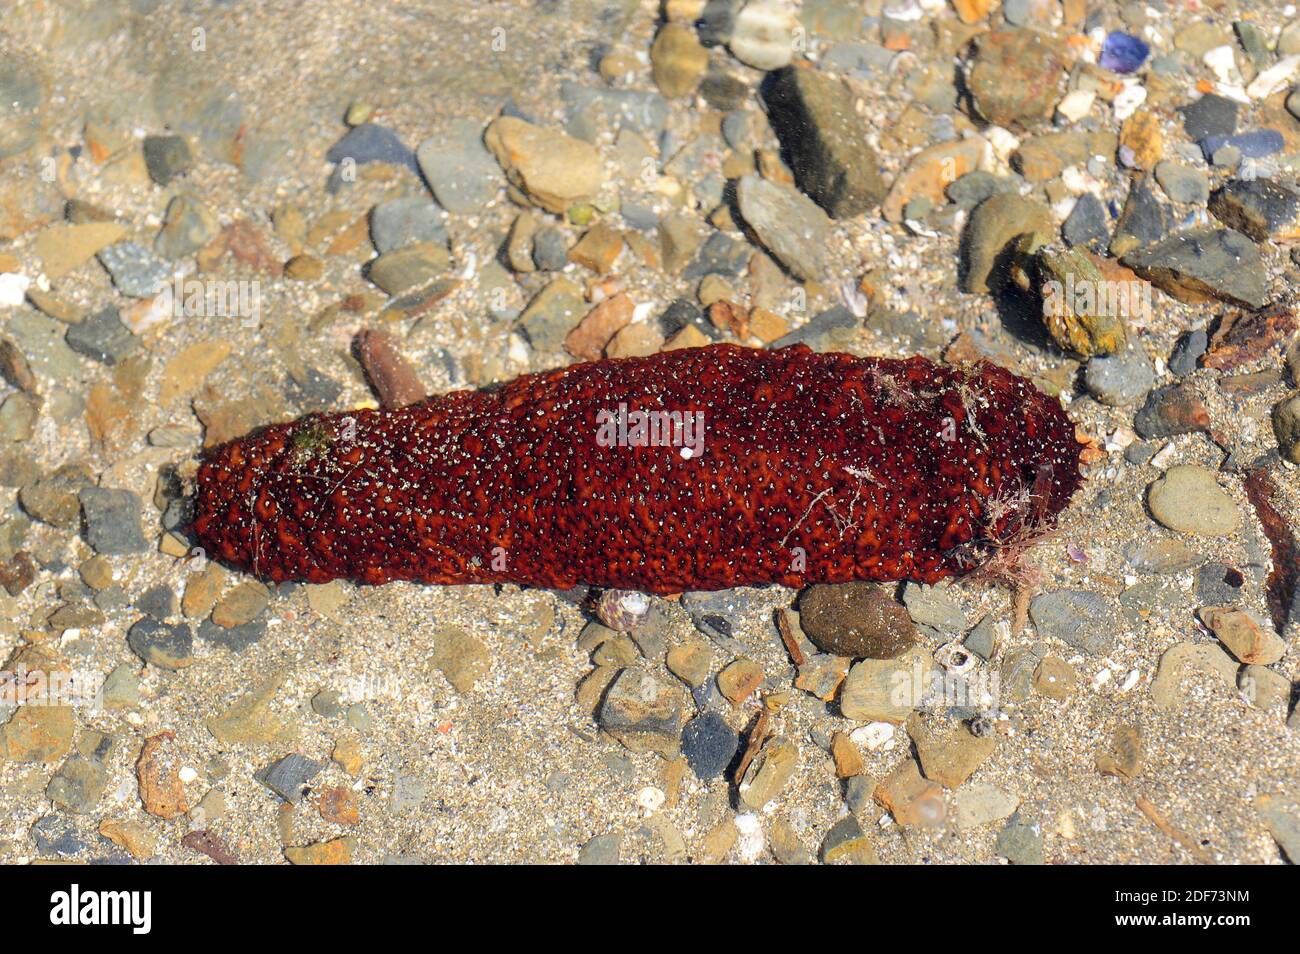 El pepino tubular (Holothuria tubulosa) es una especie de pepino de mar que se alimenta de detritus y plancton. Esta foto fue tomada en Cap Creus, Girona Foto de stock